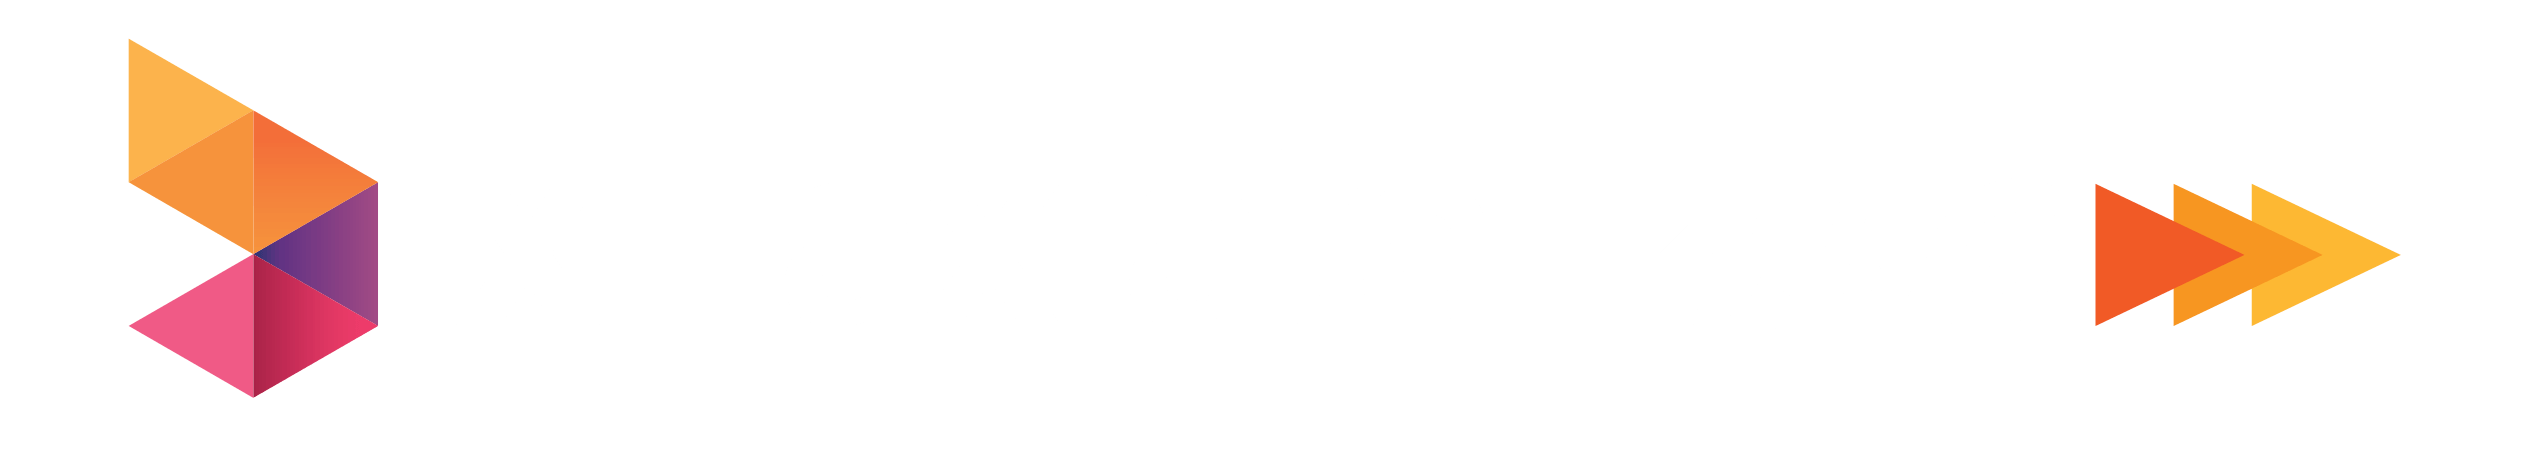 Axiata Logo - xl axiata logo png - AbeonCliparts | Cliparts & Vectors